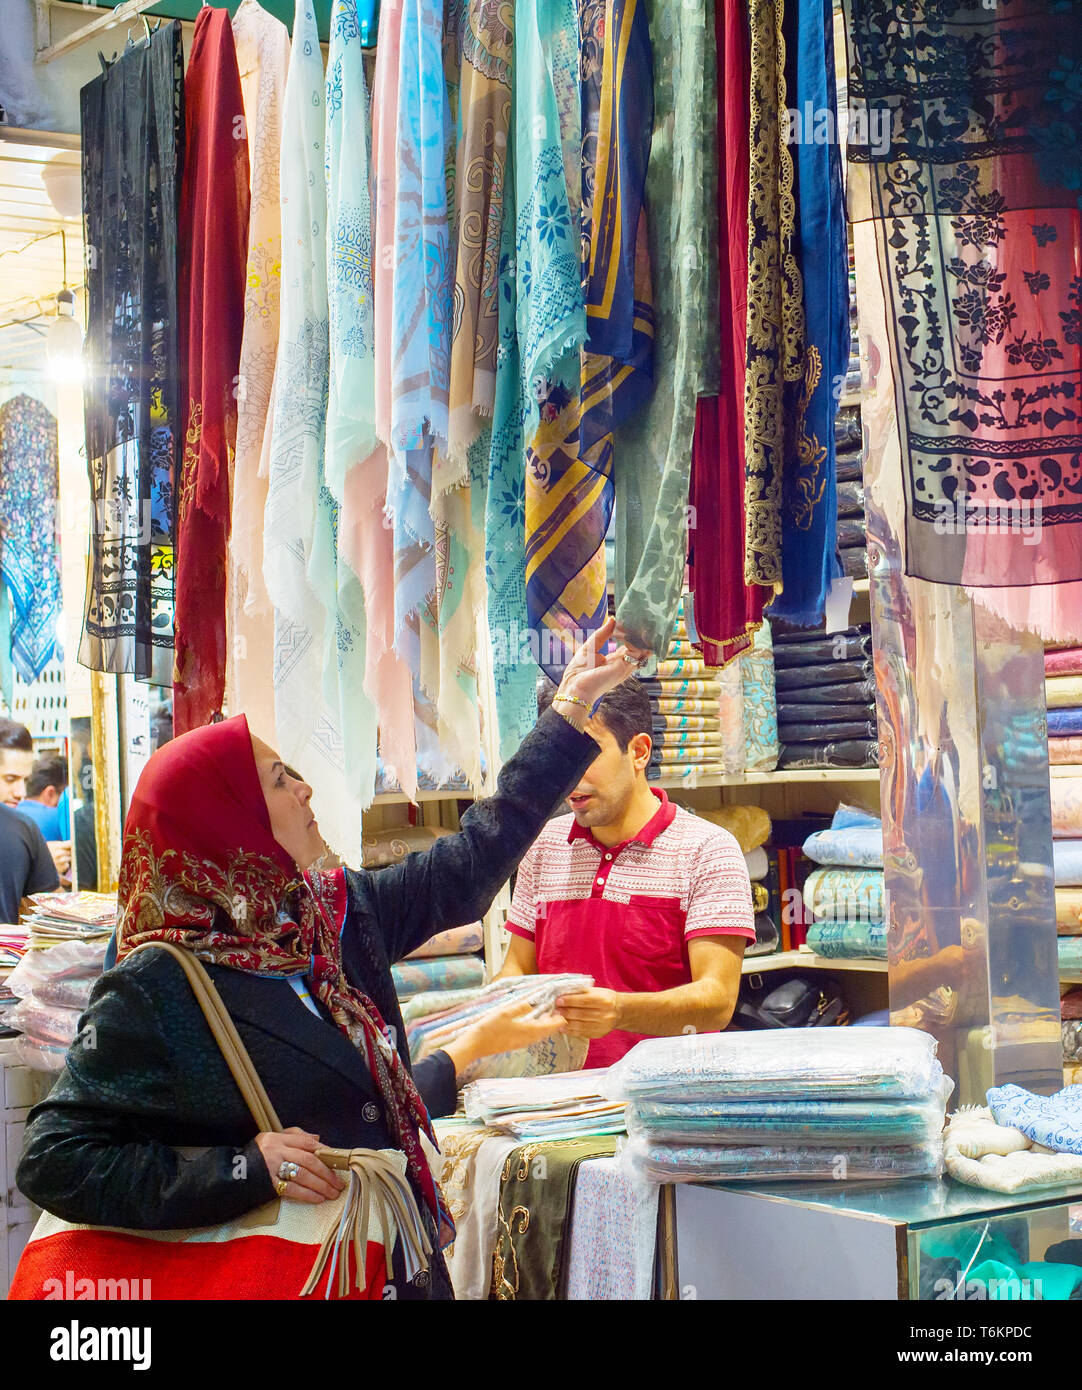 TEHRAN, IRAN - MAY 22, 2017: Woman looking at silk fabrics, textiles and colorful shawls at Grand Bazaar - main market in Tehran Stock Photo